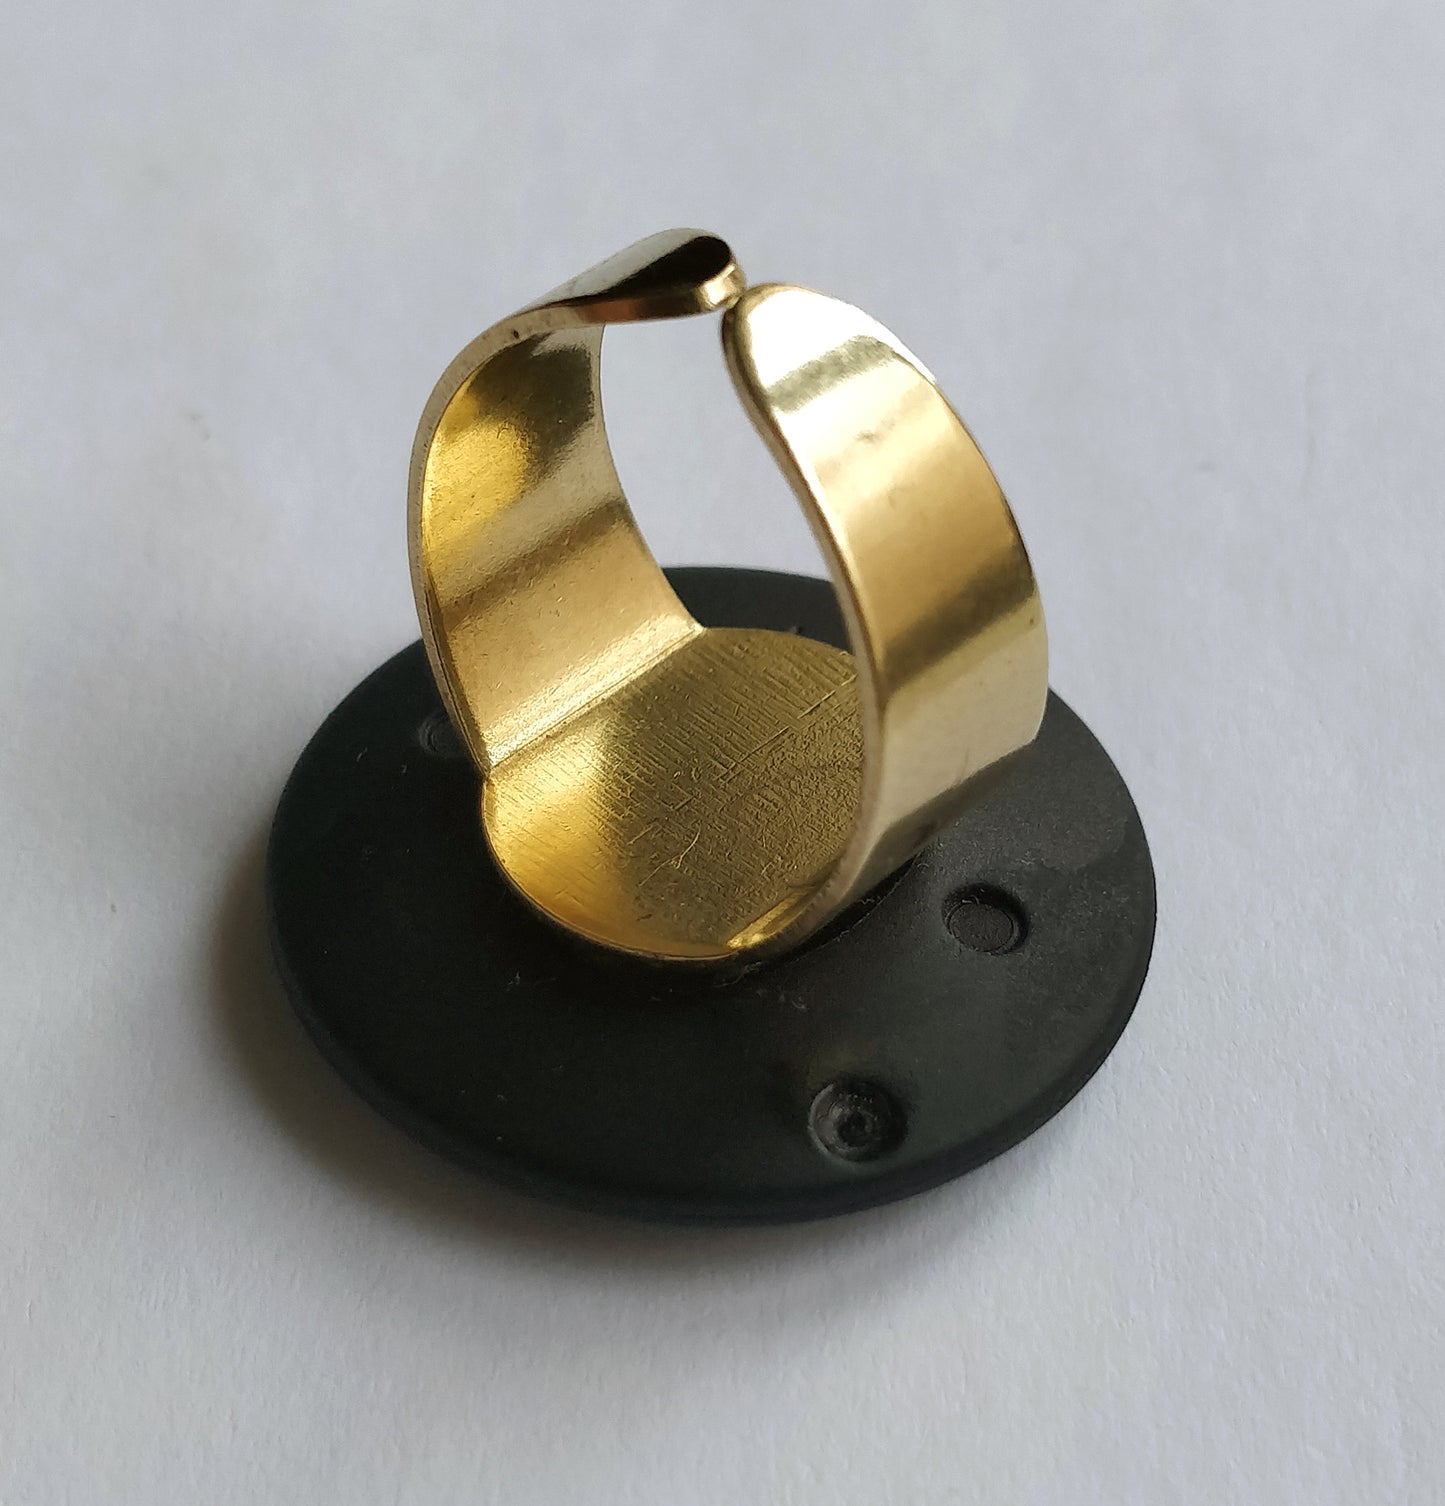 Art.No. 30502-0031 Brass Button Ring